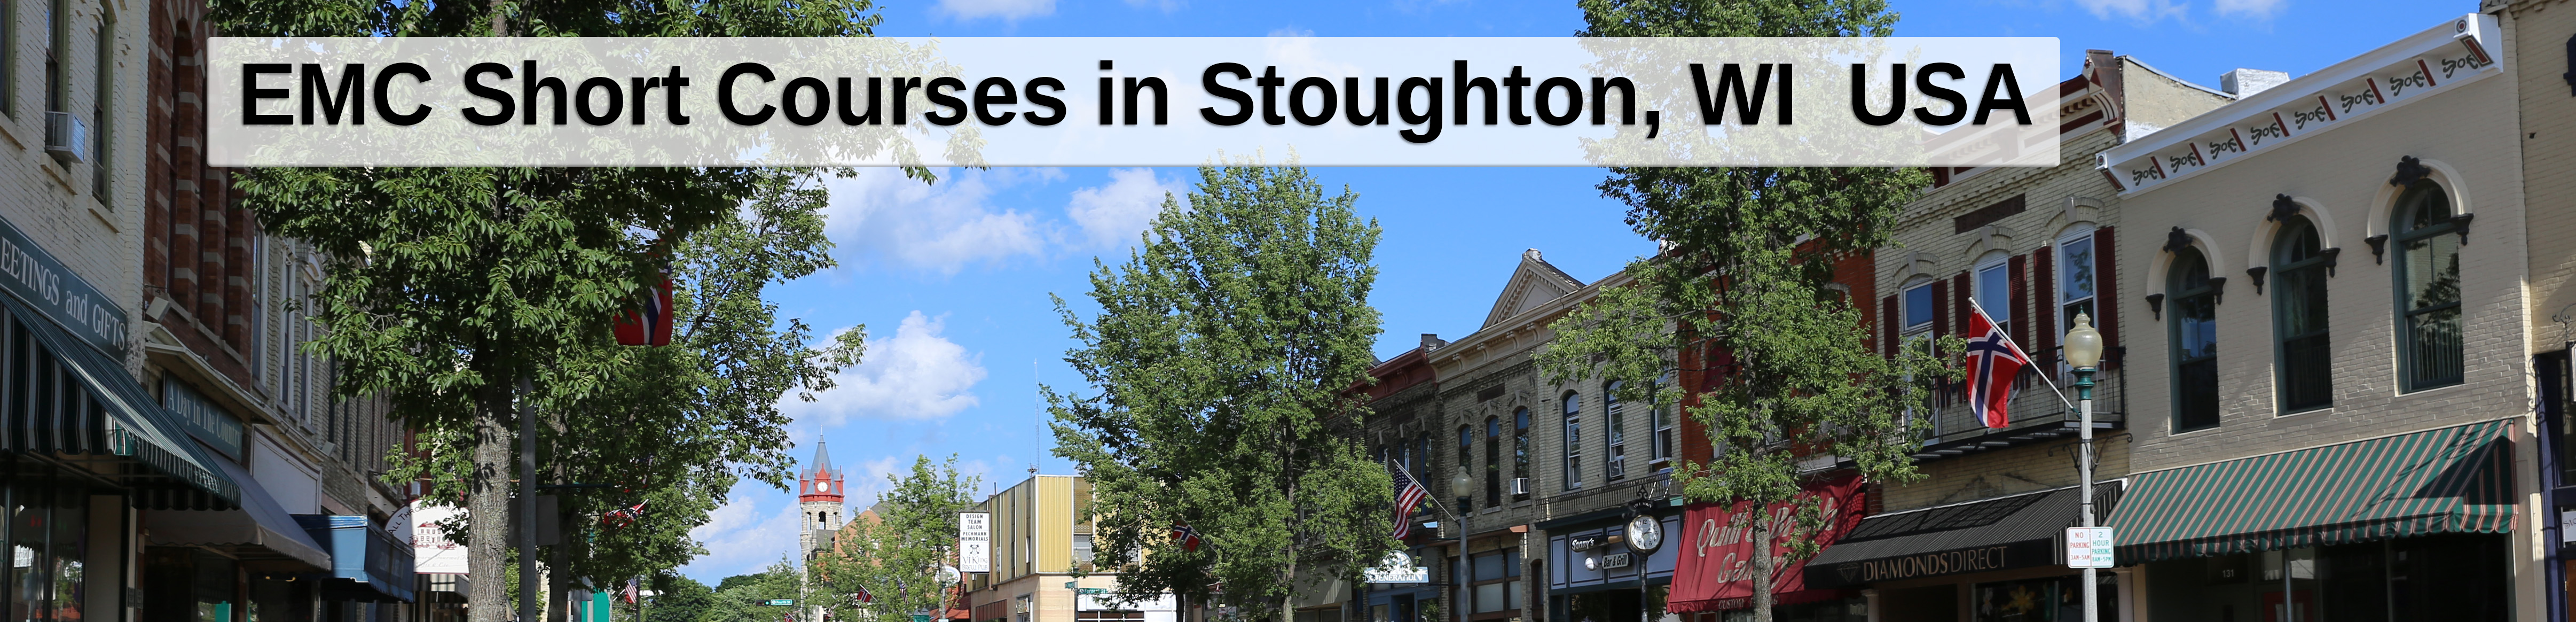 Downtown Stoughton, WI